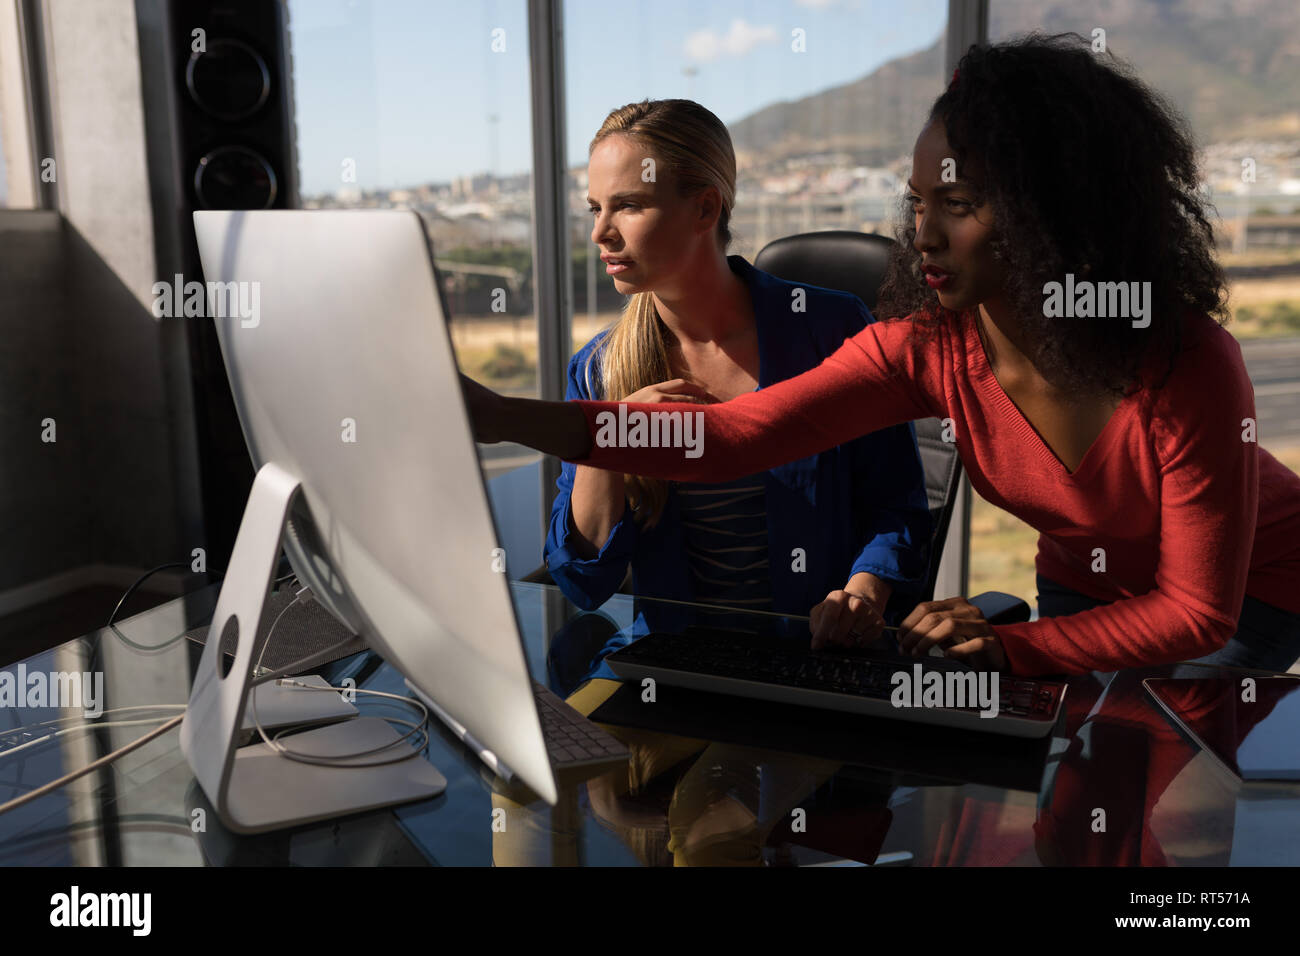 Les femmes cadres travaillant sur pc de bureau at desk in office Banque D'Images